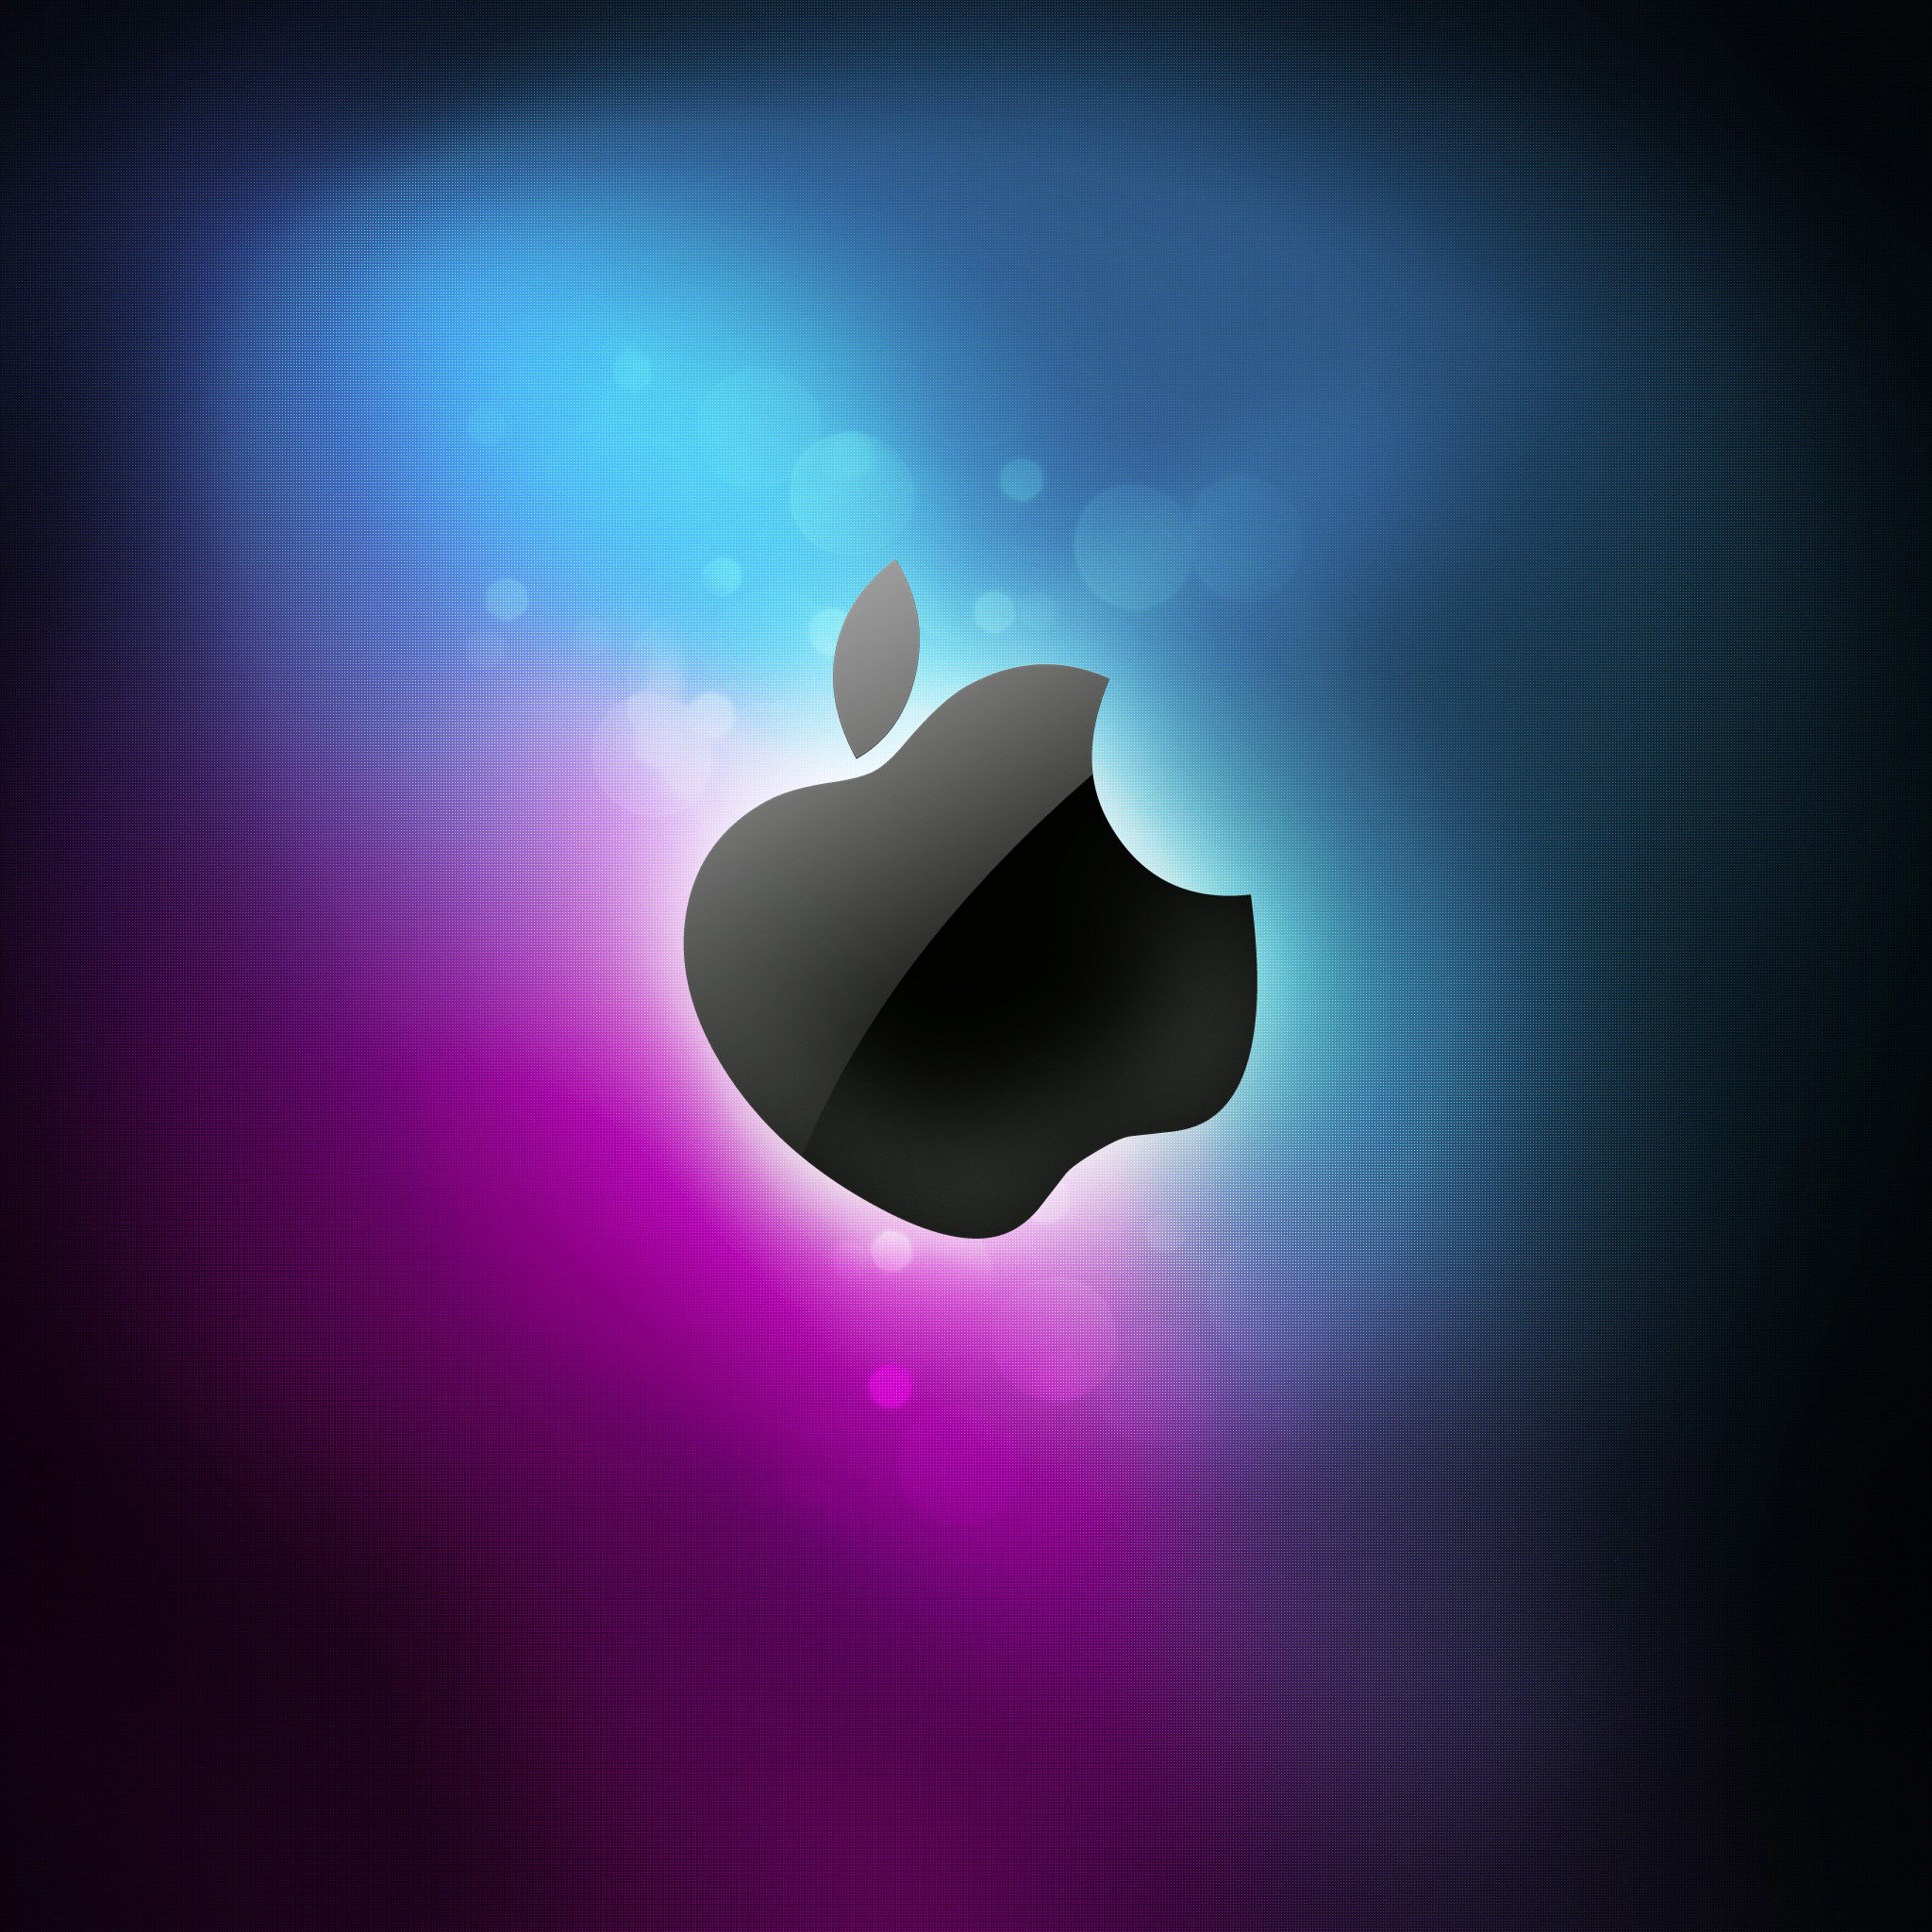 2048x2048 iPad Wallpapers HD apple logo Apple iPad iPad 2 iPad mini 